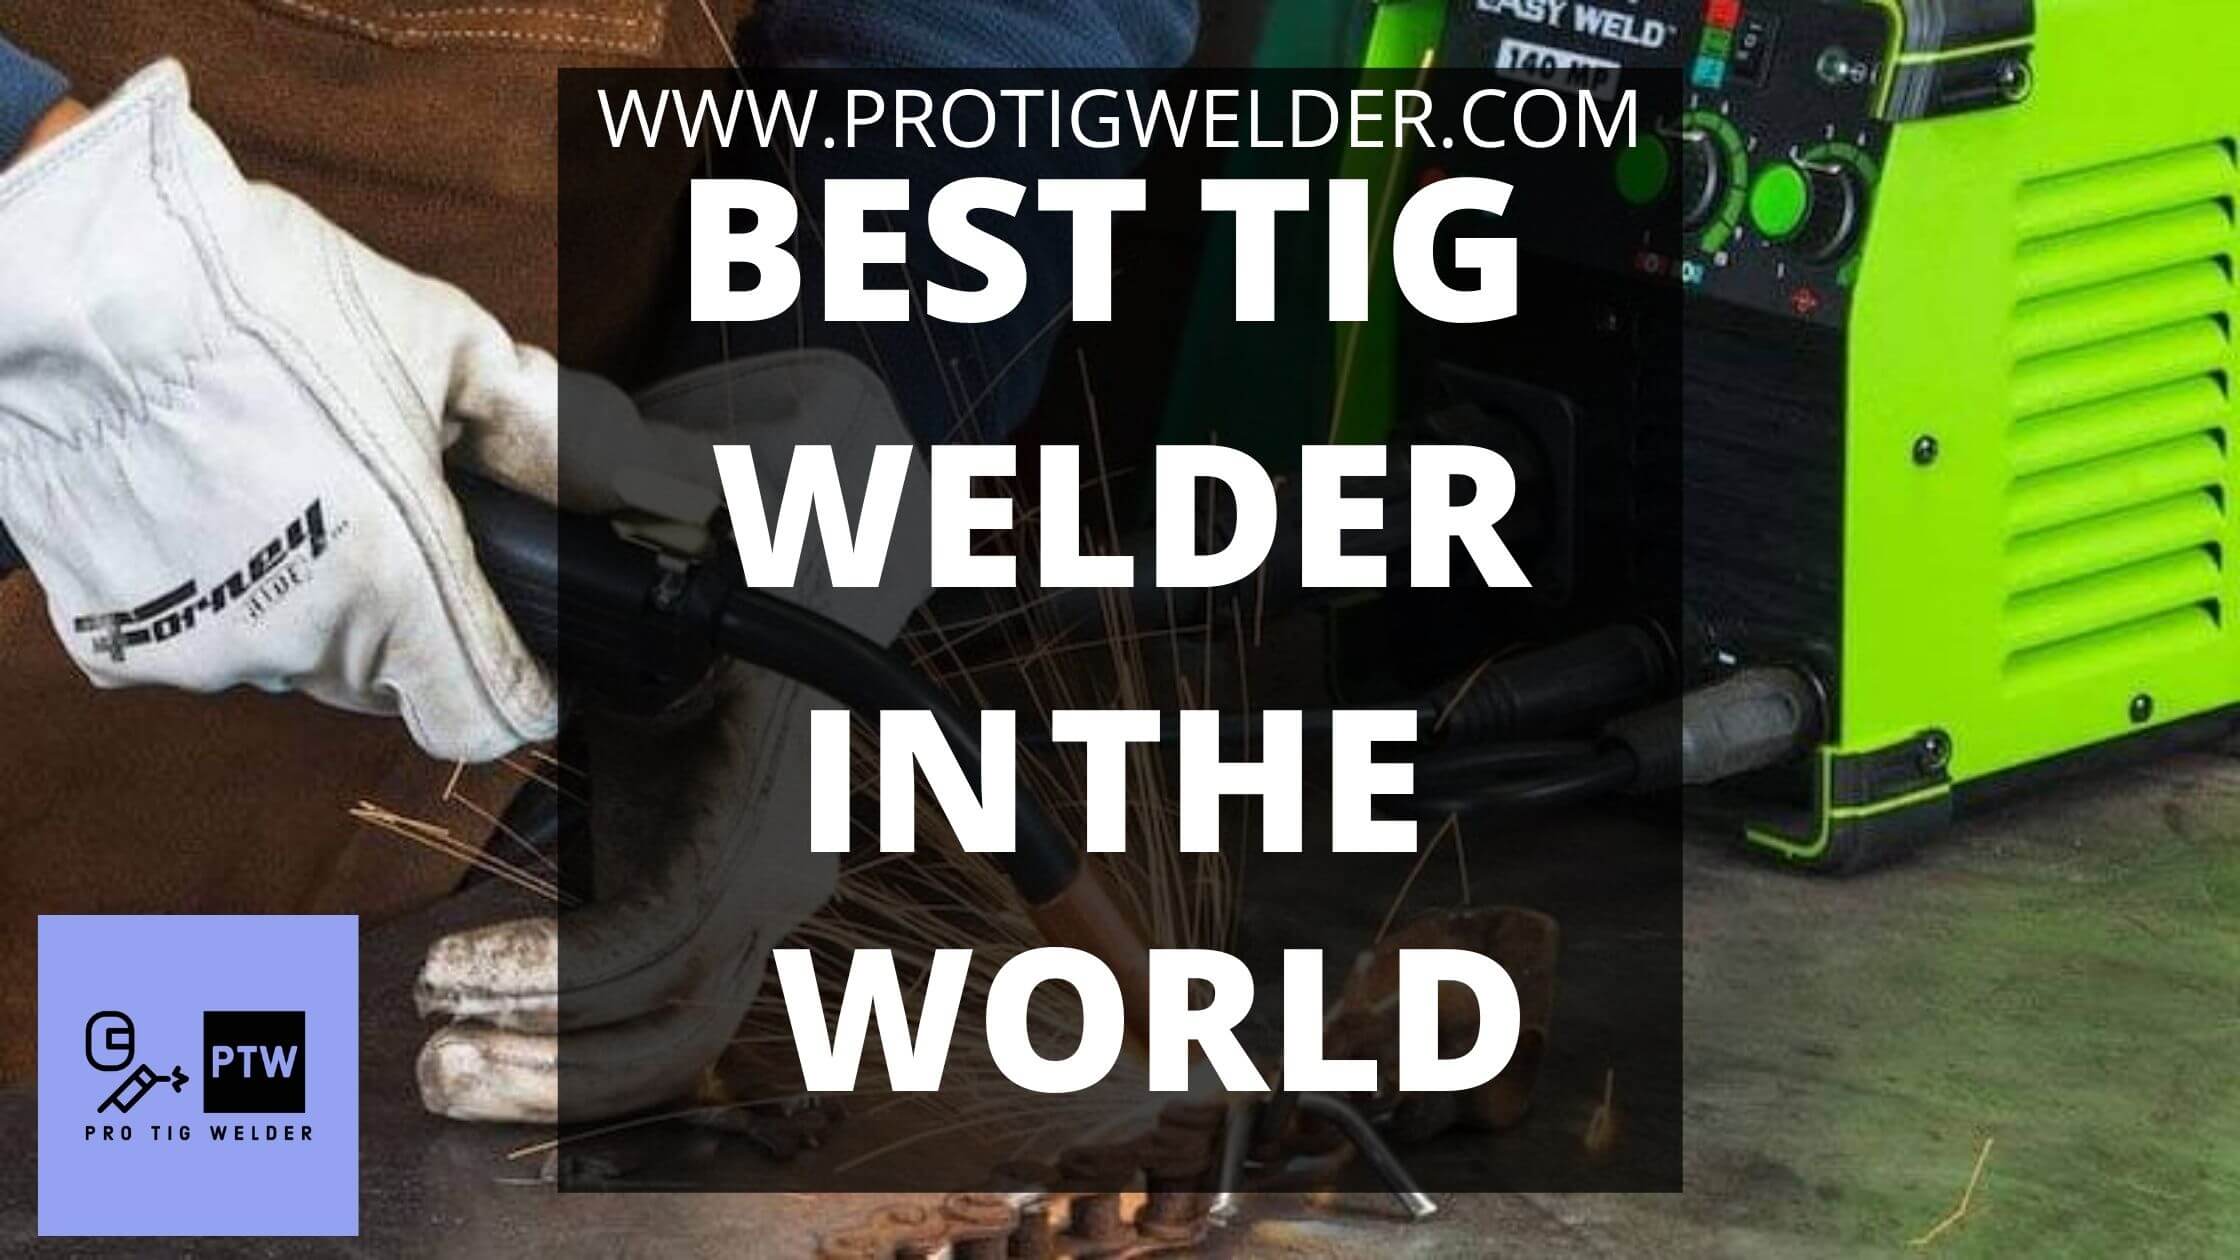 best tig welder in the world